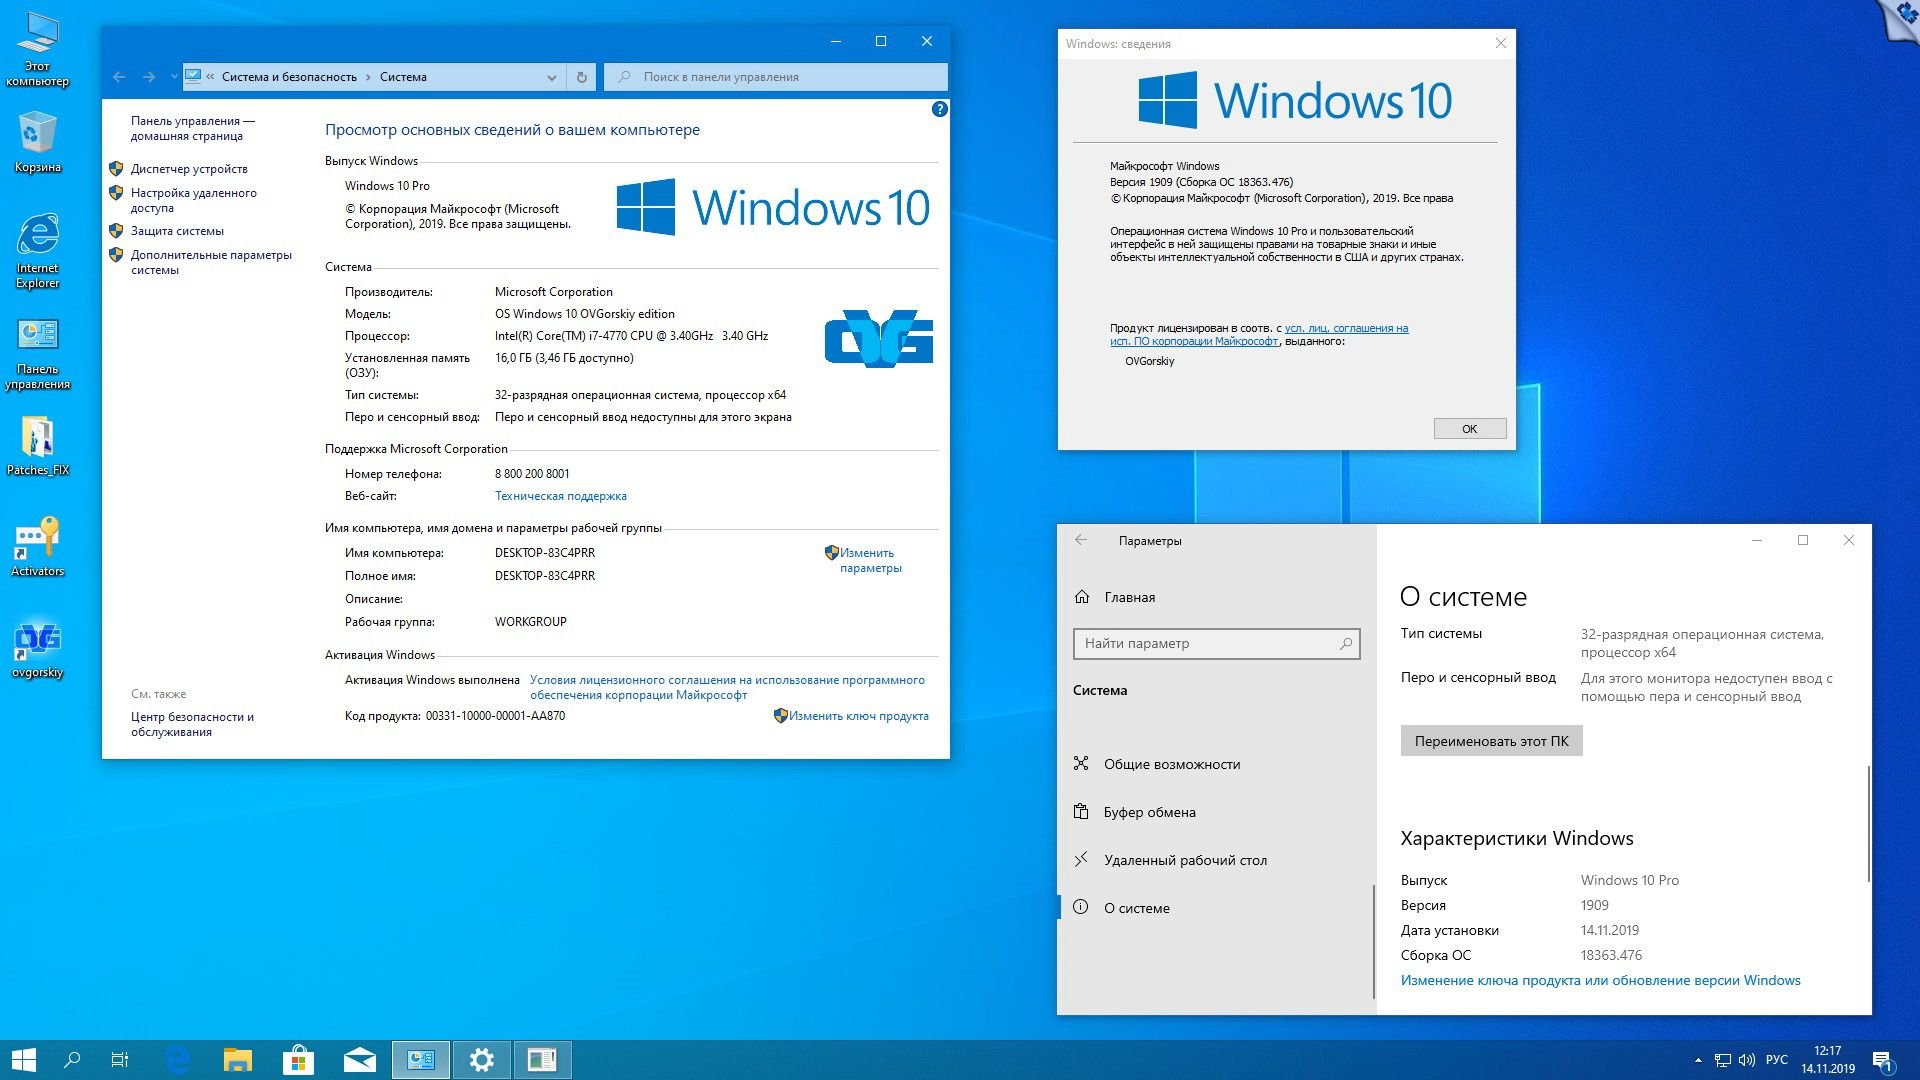 Виндовс 10 сборка для слабый. Виндовс 10. О системе Windows 10. Операционная система Windows 10 Pro x64. Windows 10 Pro система.